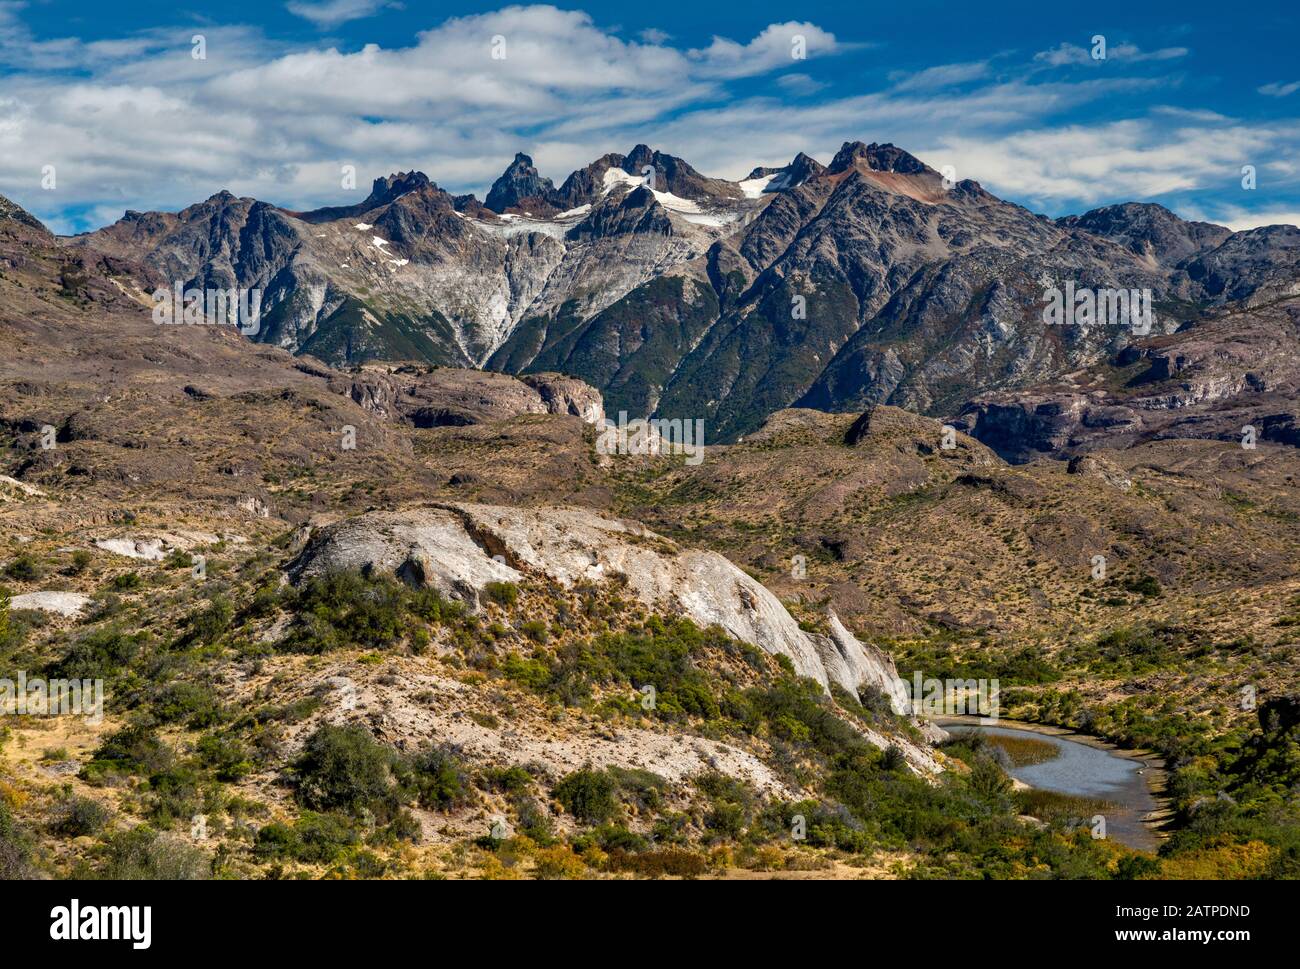 La catena montuosa di Jeinimeni nelle Ande meridionali, il futuro Parco Nazionale della Patagonia, visto dalla strada sterrata di Paso las Llaves, Patagonia, Cile Foto Stock